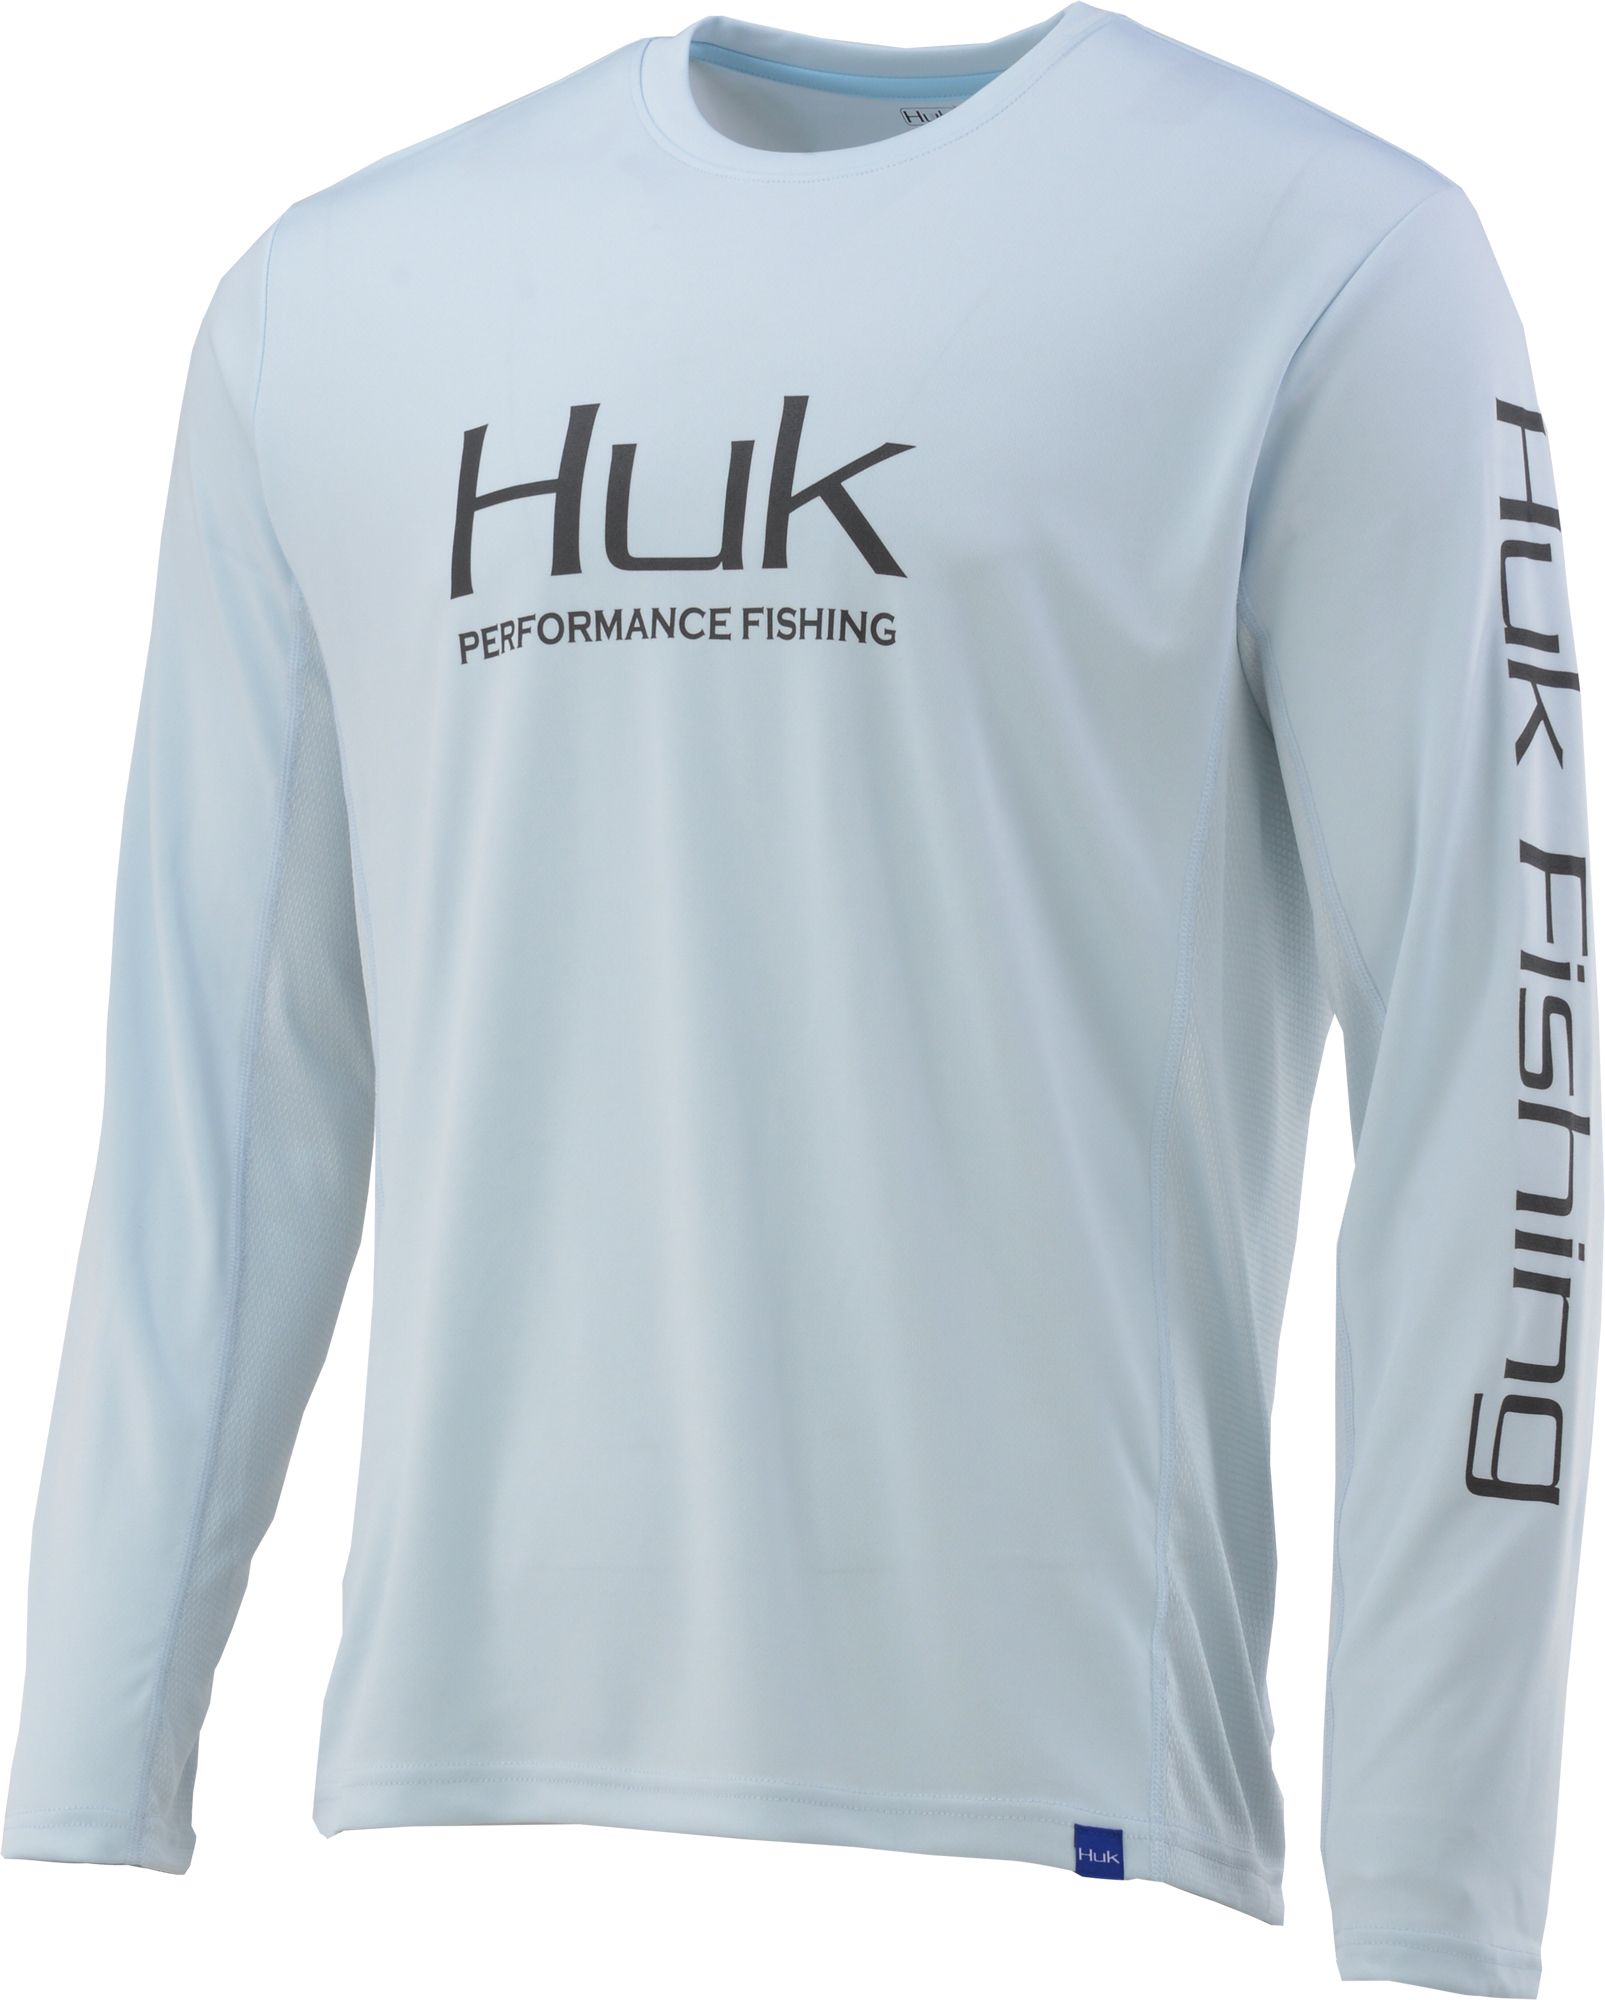 Huk Performance Fishing Black Polo Shirt M New NWT Ret $49.99 